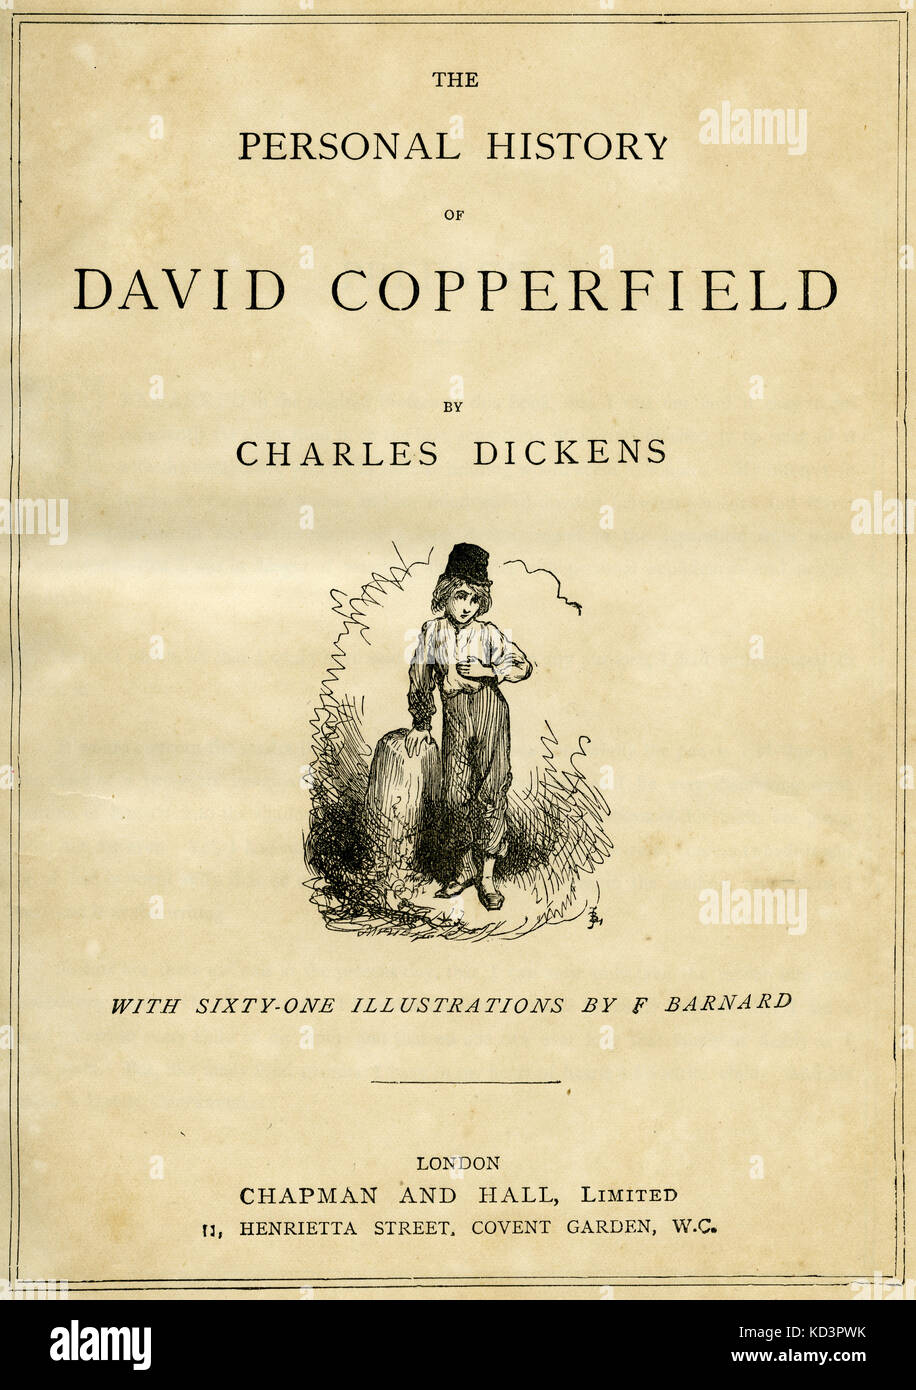 La Storia personale di David Copperfield di Charles Dickens pagina del titolo - romanziere inglese, 7 febbraio 1812 - 9 giugno 1870. Illustrazione di Frederick (Fred) Barnard . Londra . Chapman e Hall. Foto Stock